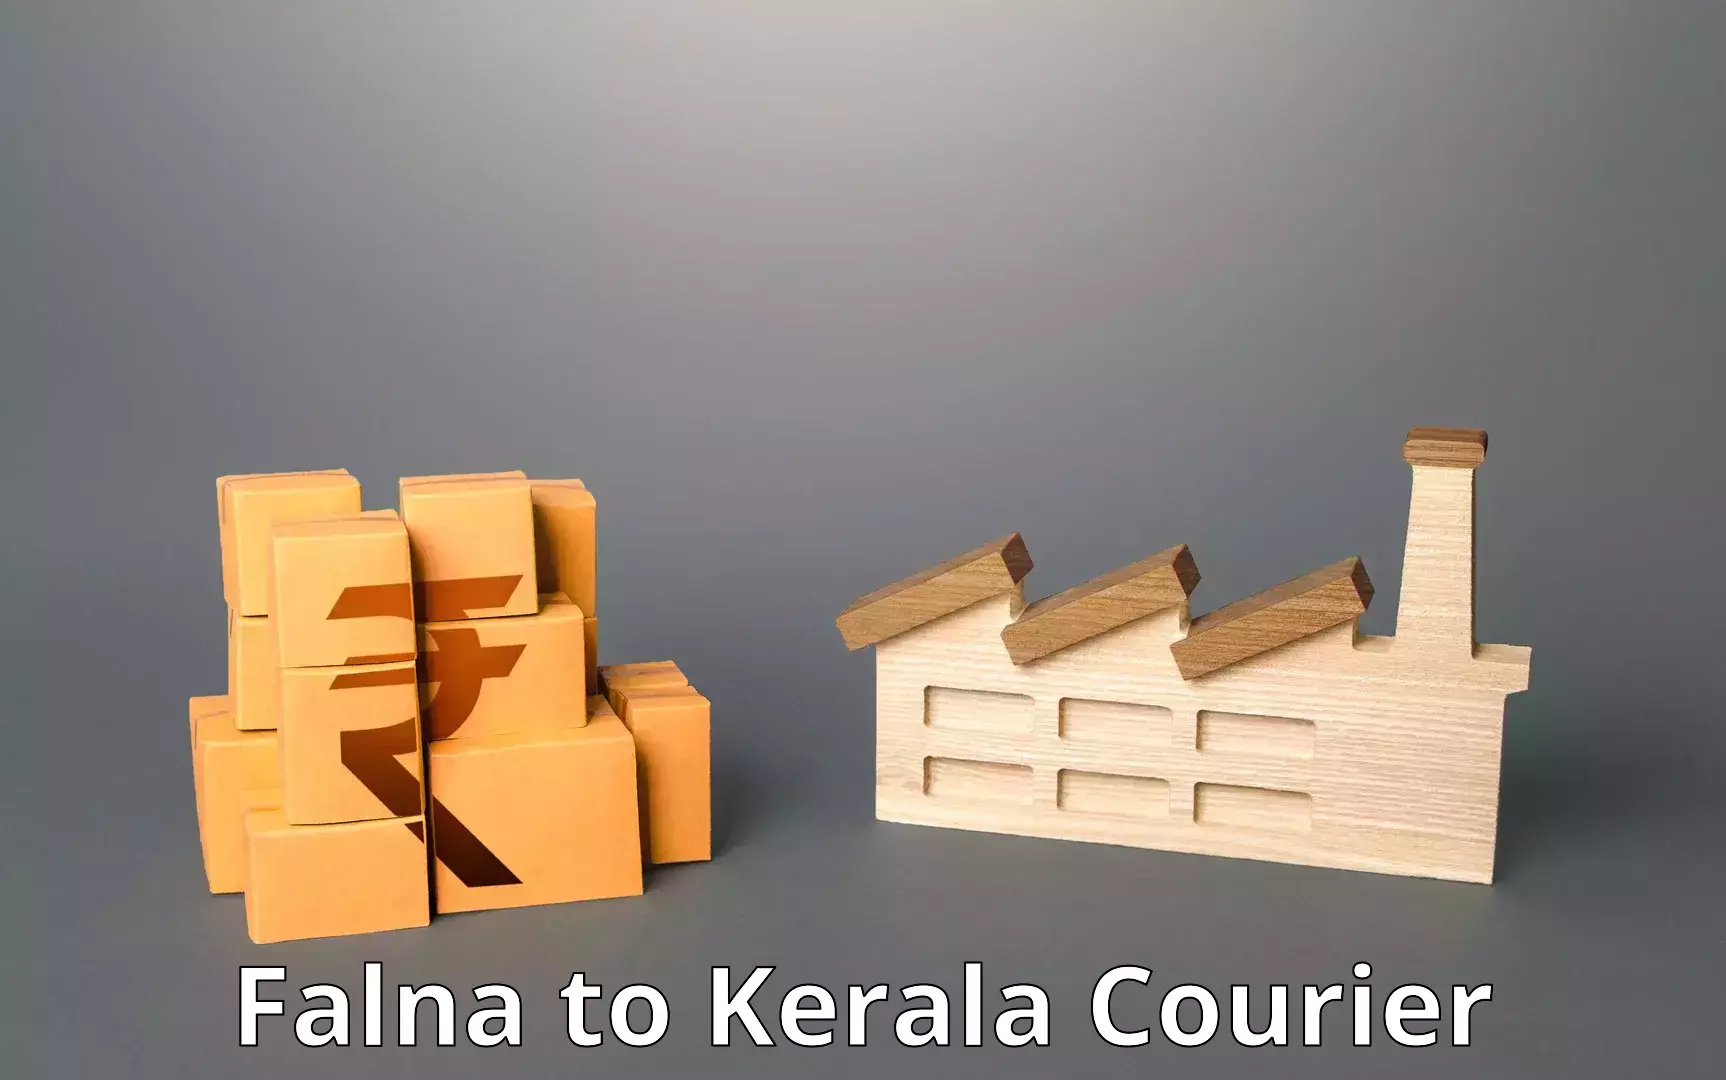 On-demand courier Falna to Kerala